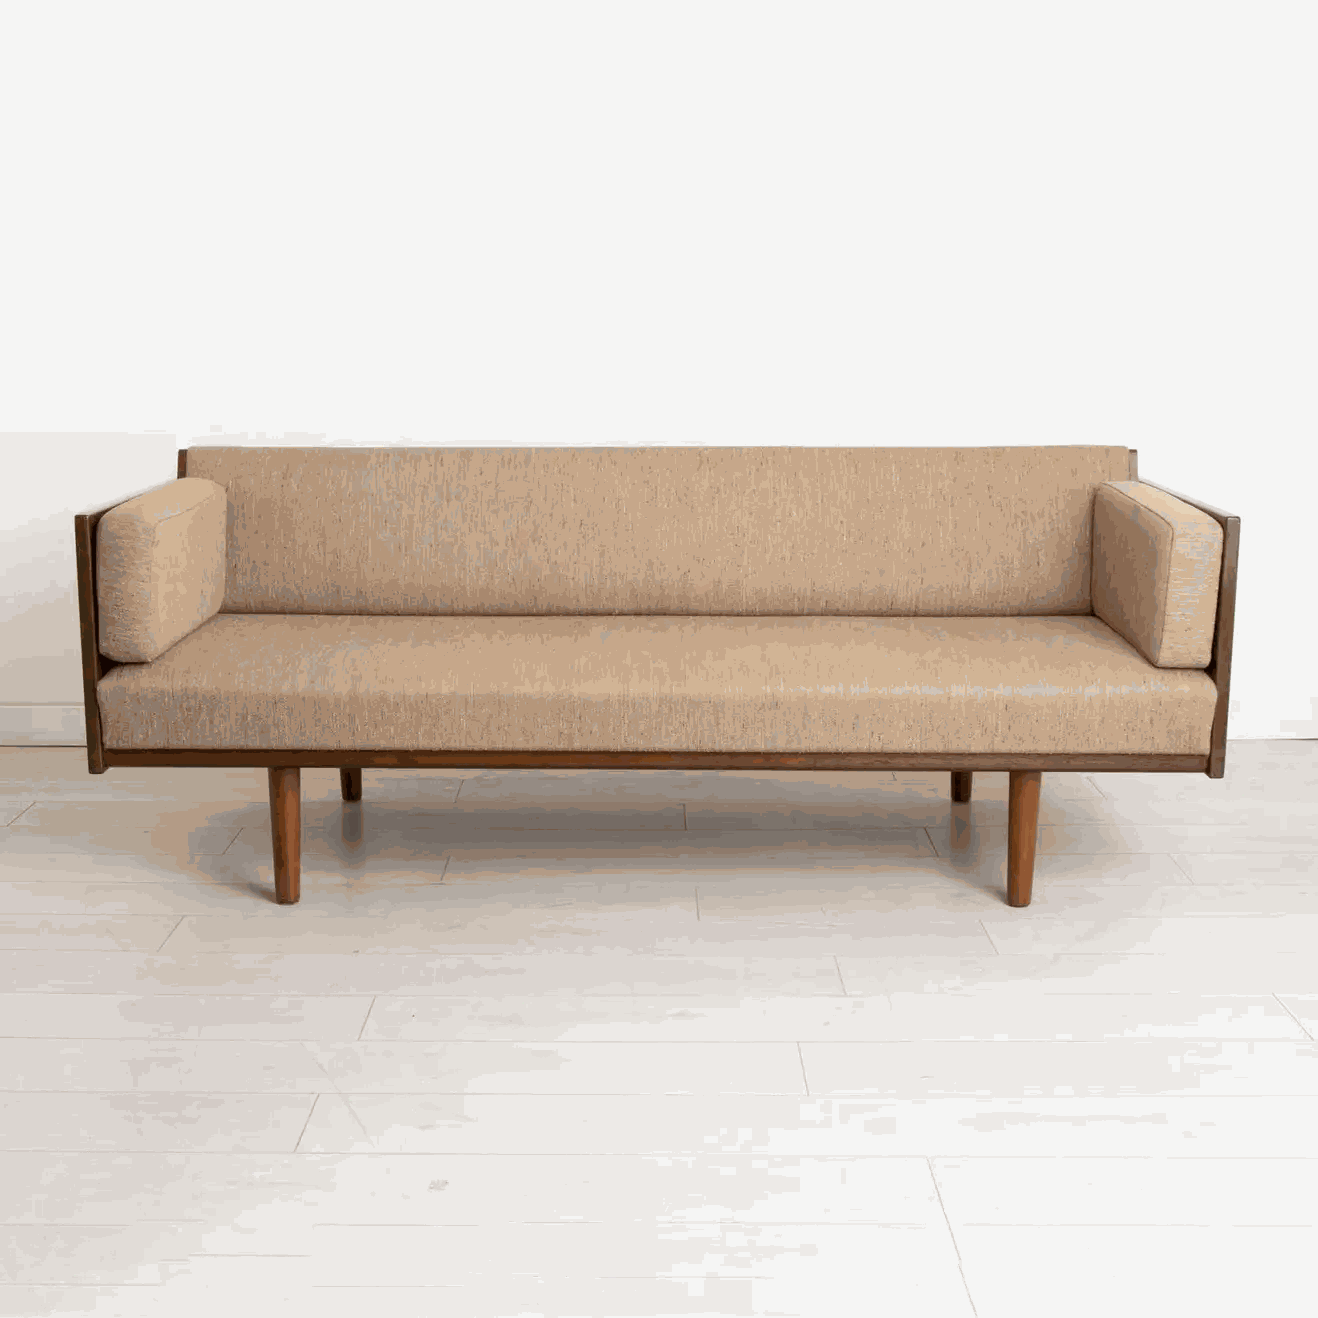 Mẫu sofa gỗ Sồi (Oak) với thiết kế hình chữ I thẳng quen thuộc mang đến sự hiện đại, tối giản cho không gian